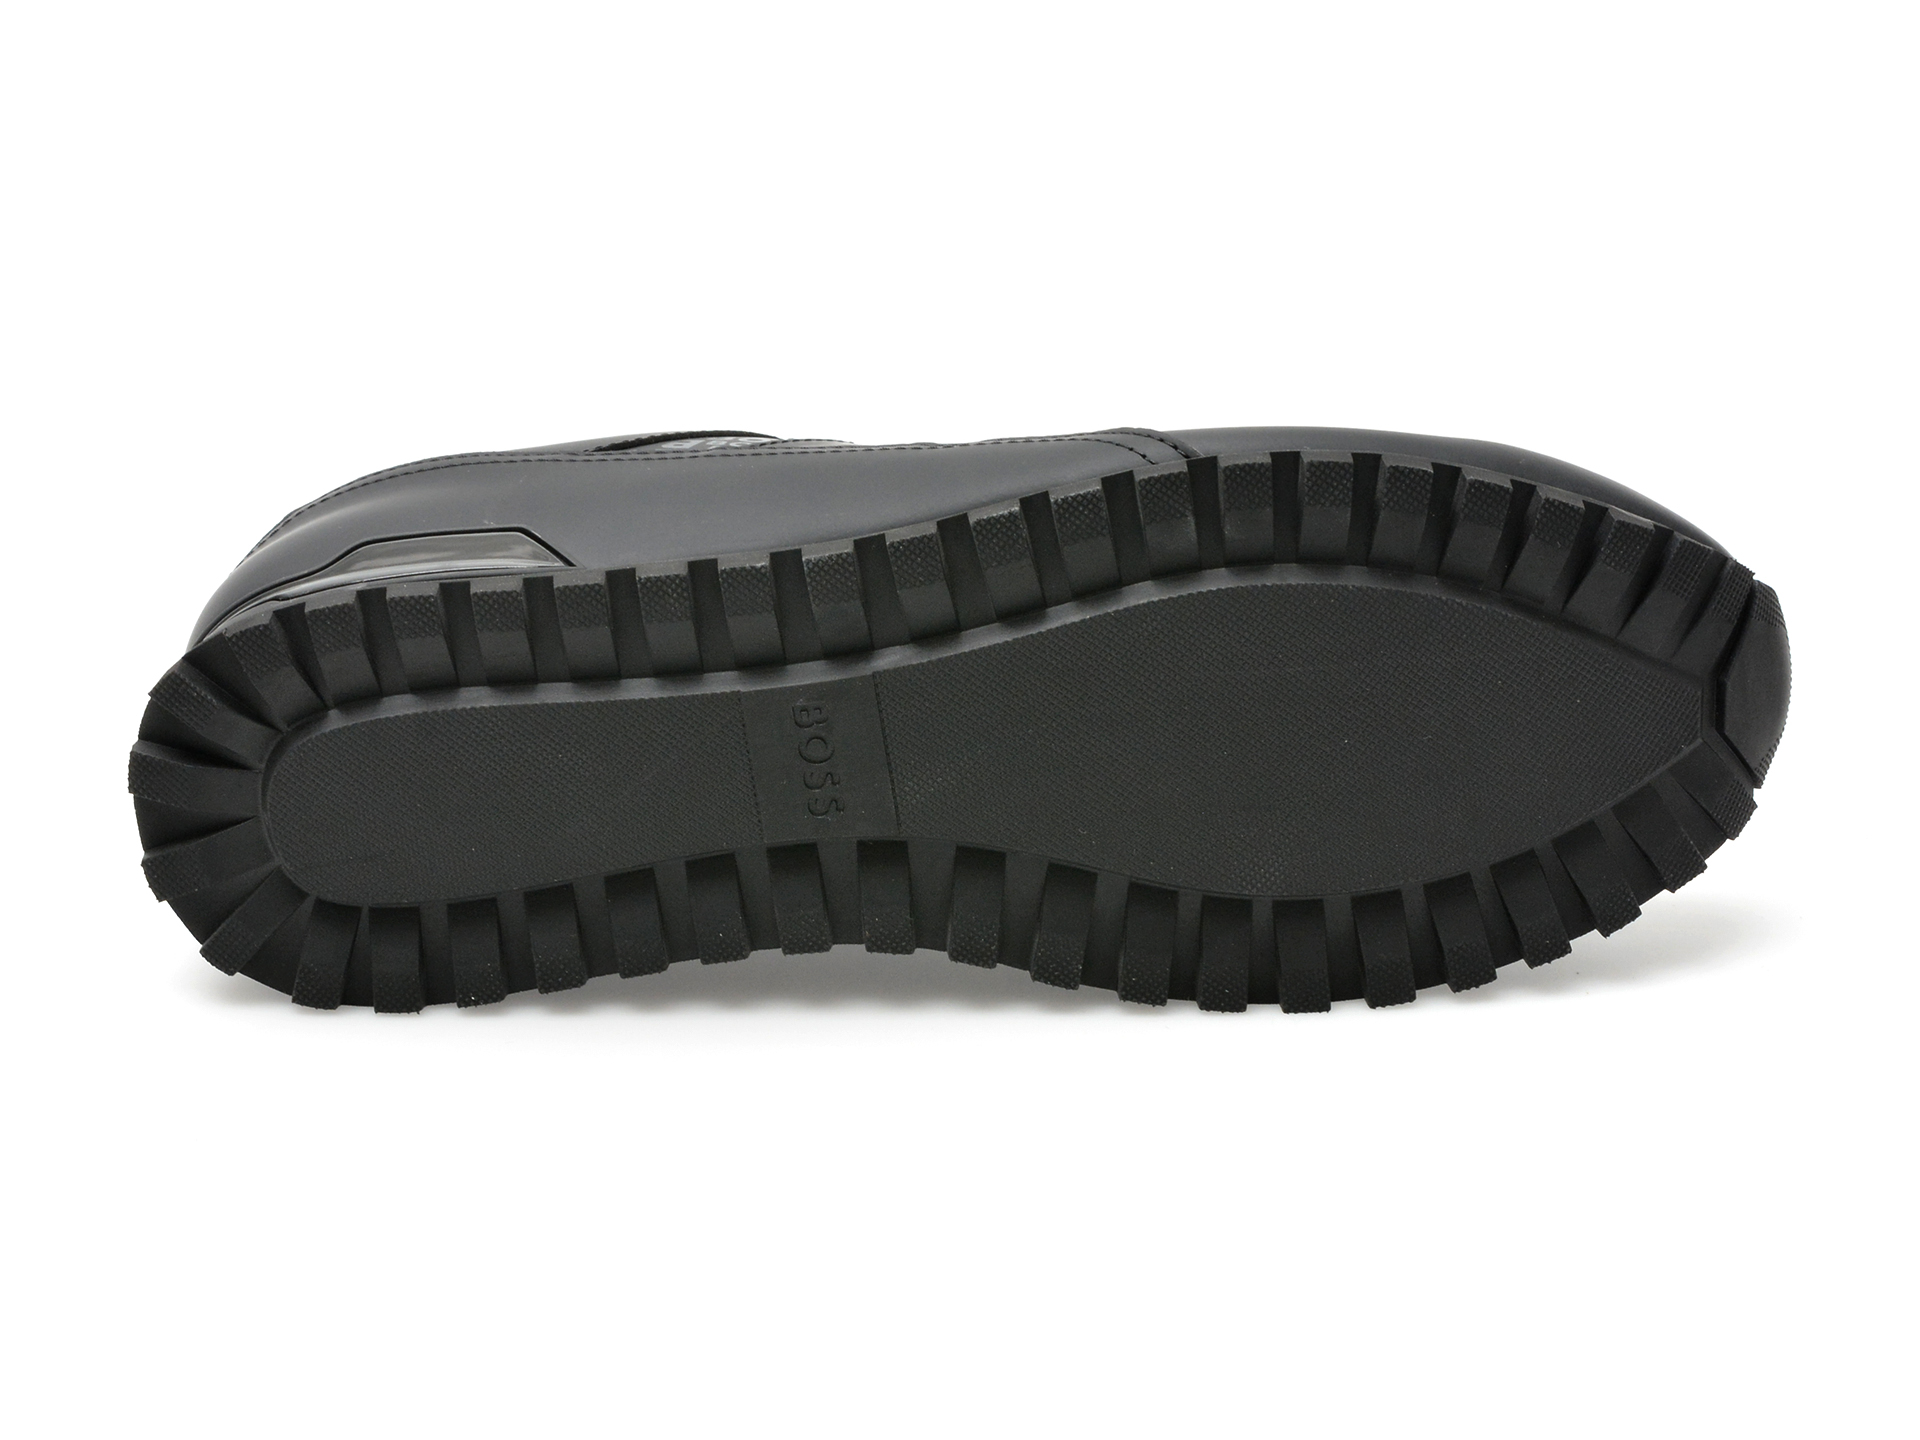 Pantofi sport BOSS negri, 3223, din piele ecologica